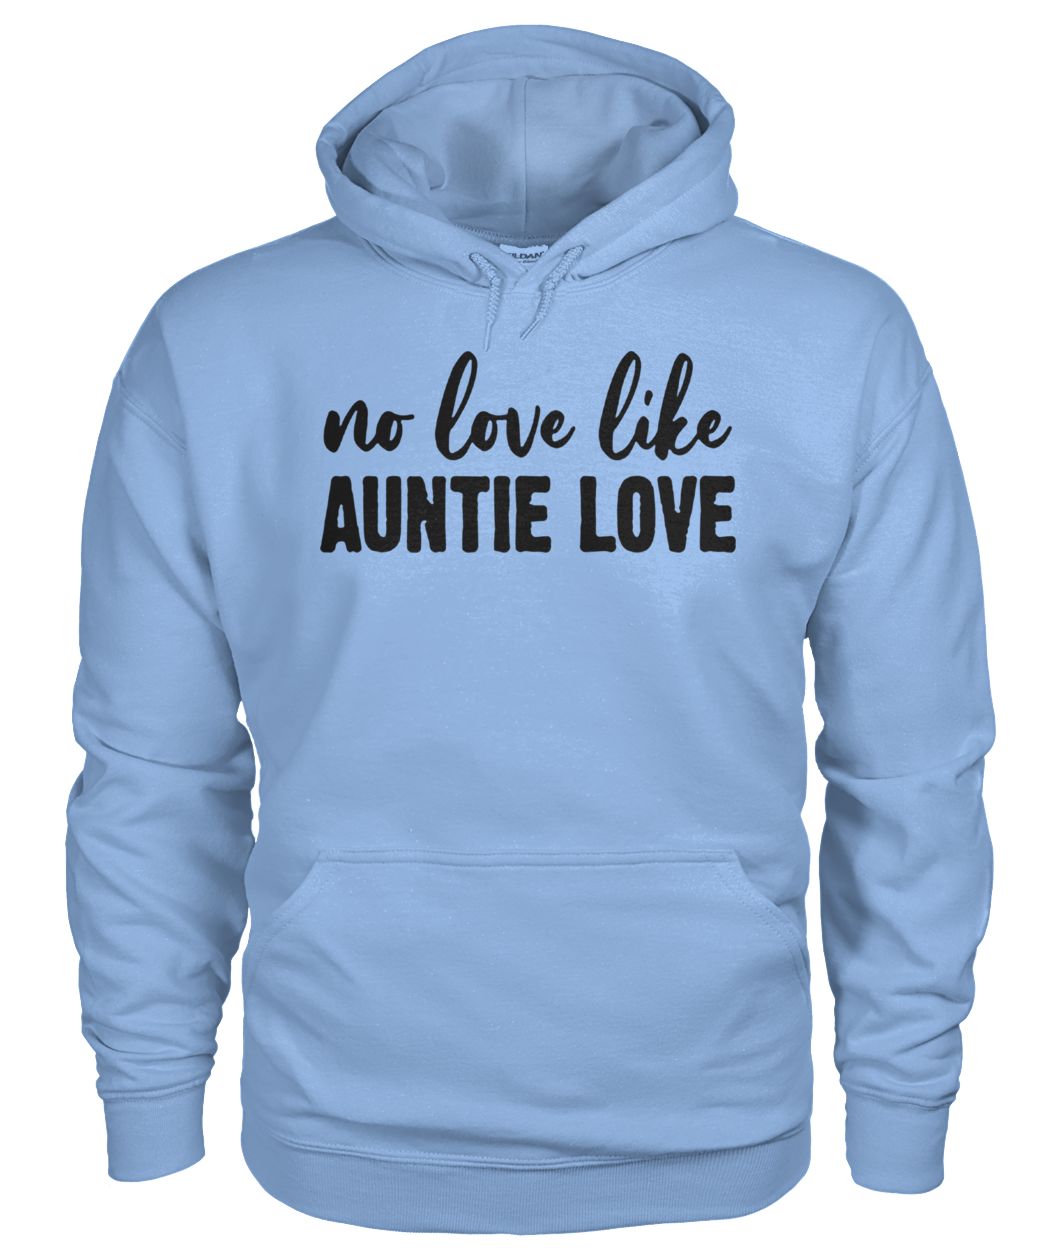 No love like auntie love gildan hoodie